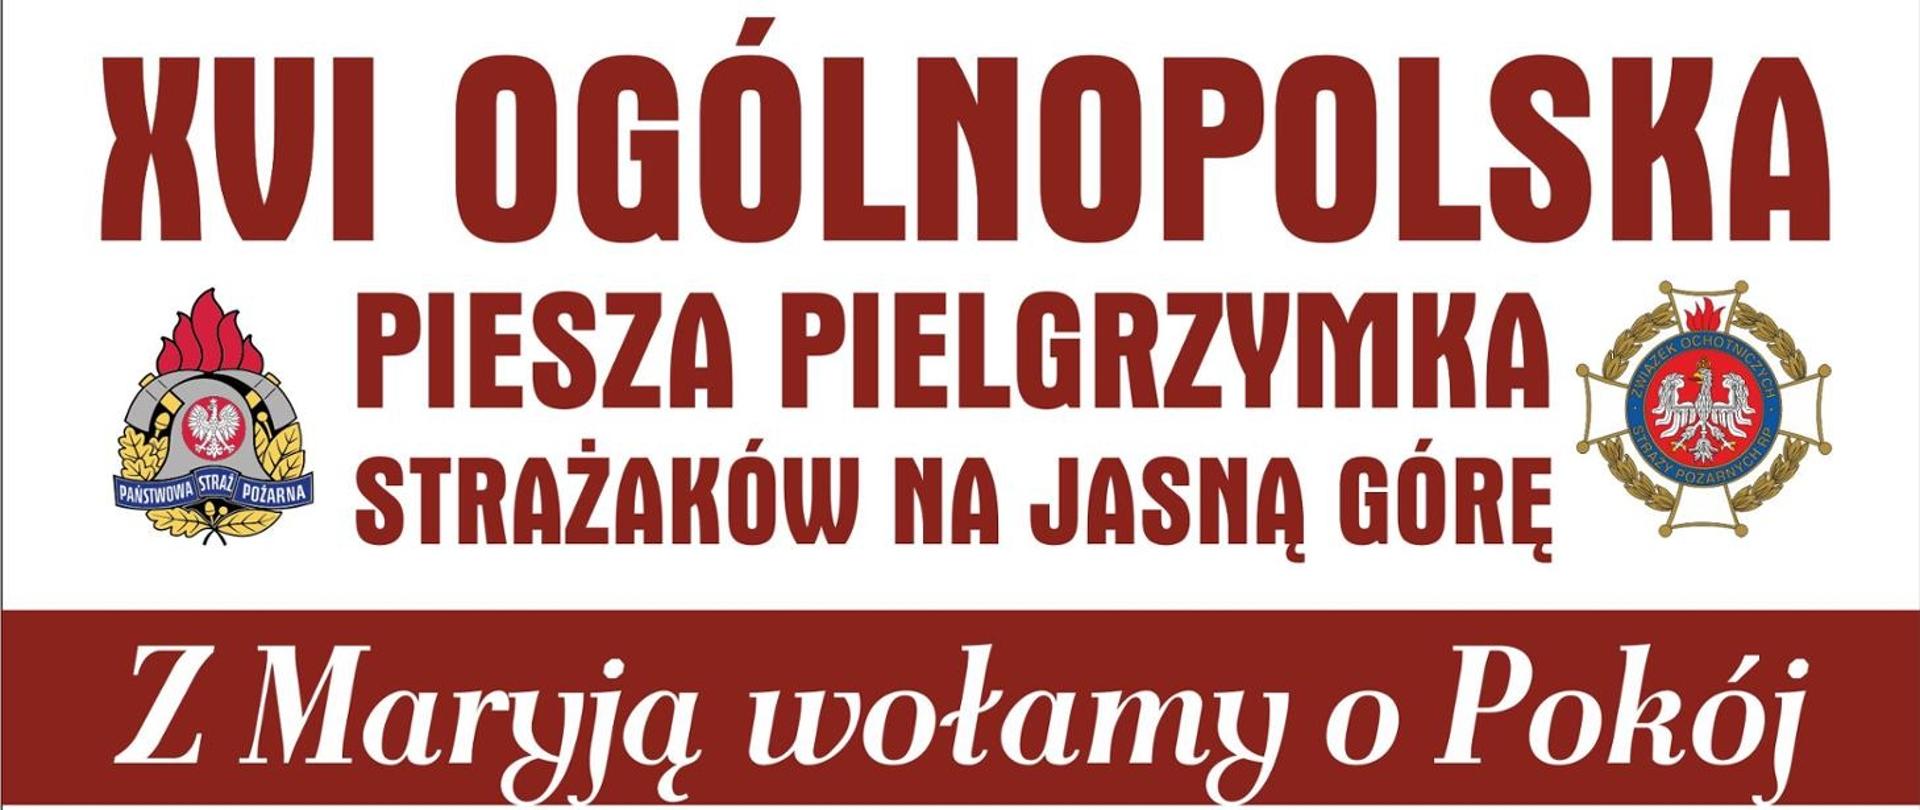 XVI Ogólnopolska Piesza Pielgrzymka Strażaków na Jasną Górę baner z logo PSP i OSP